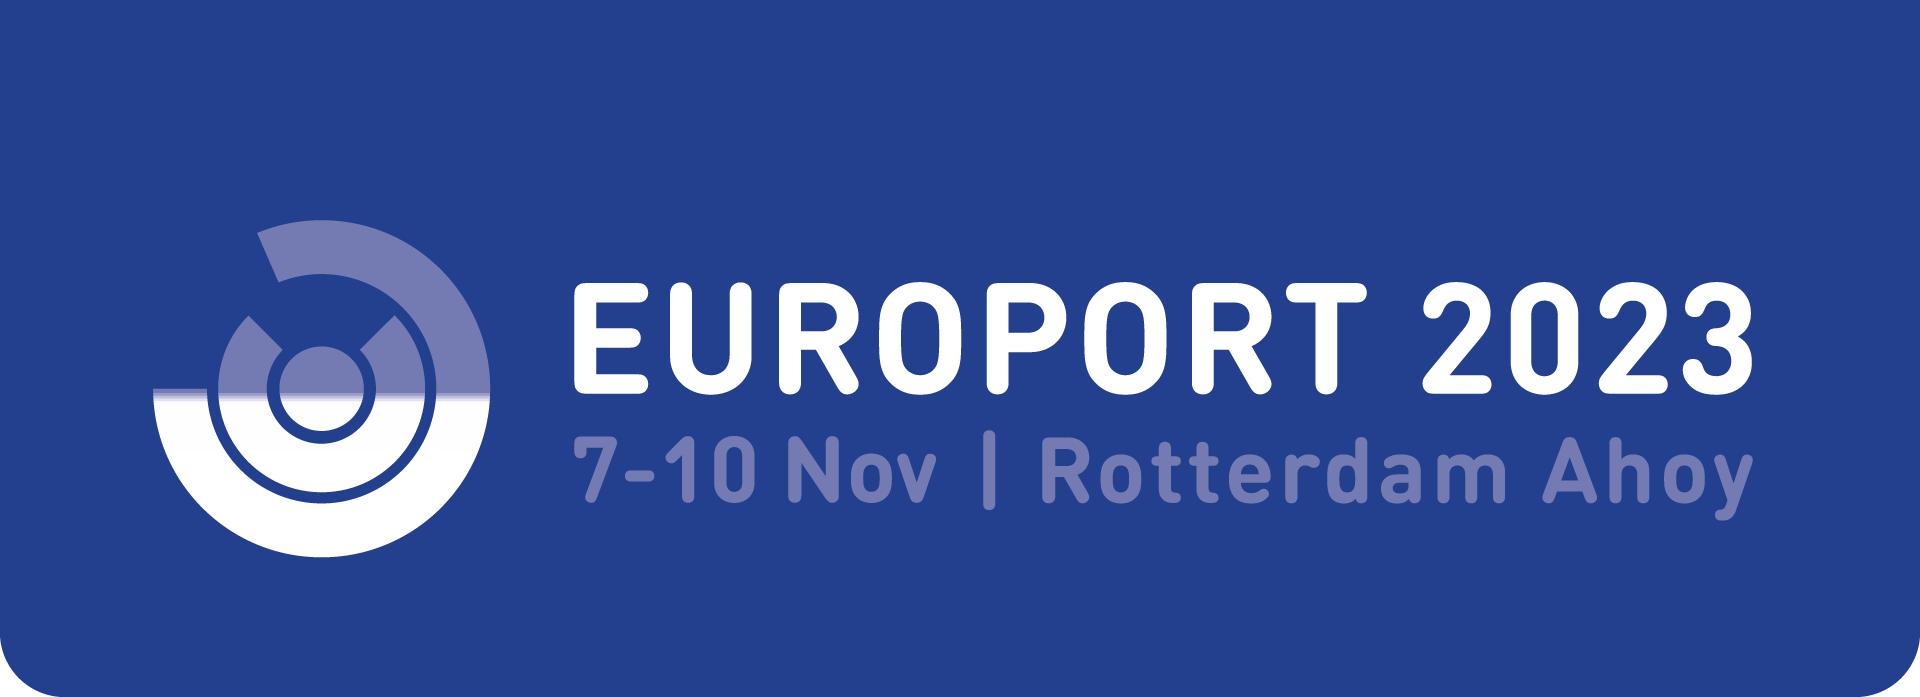 europort-logo-2023-blauwvlak-cmyk-1